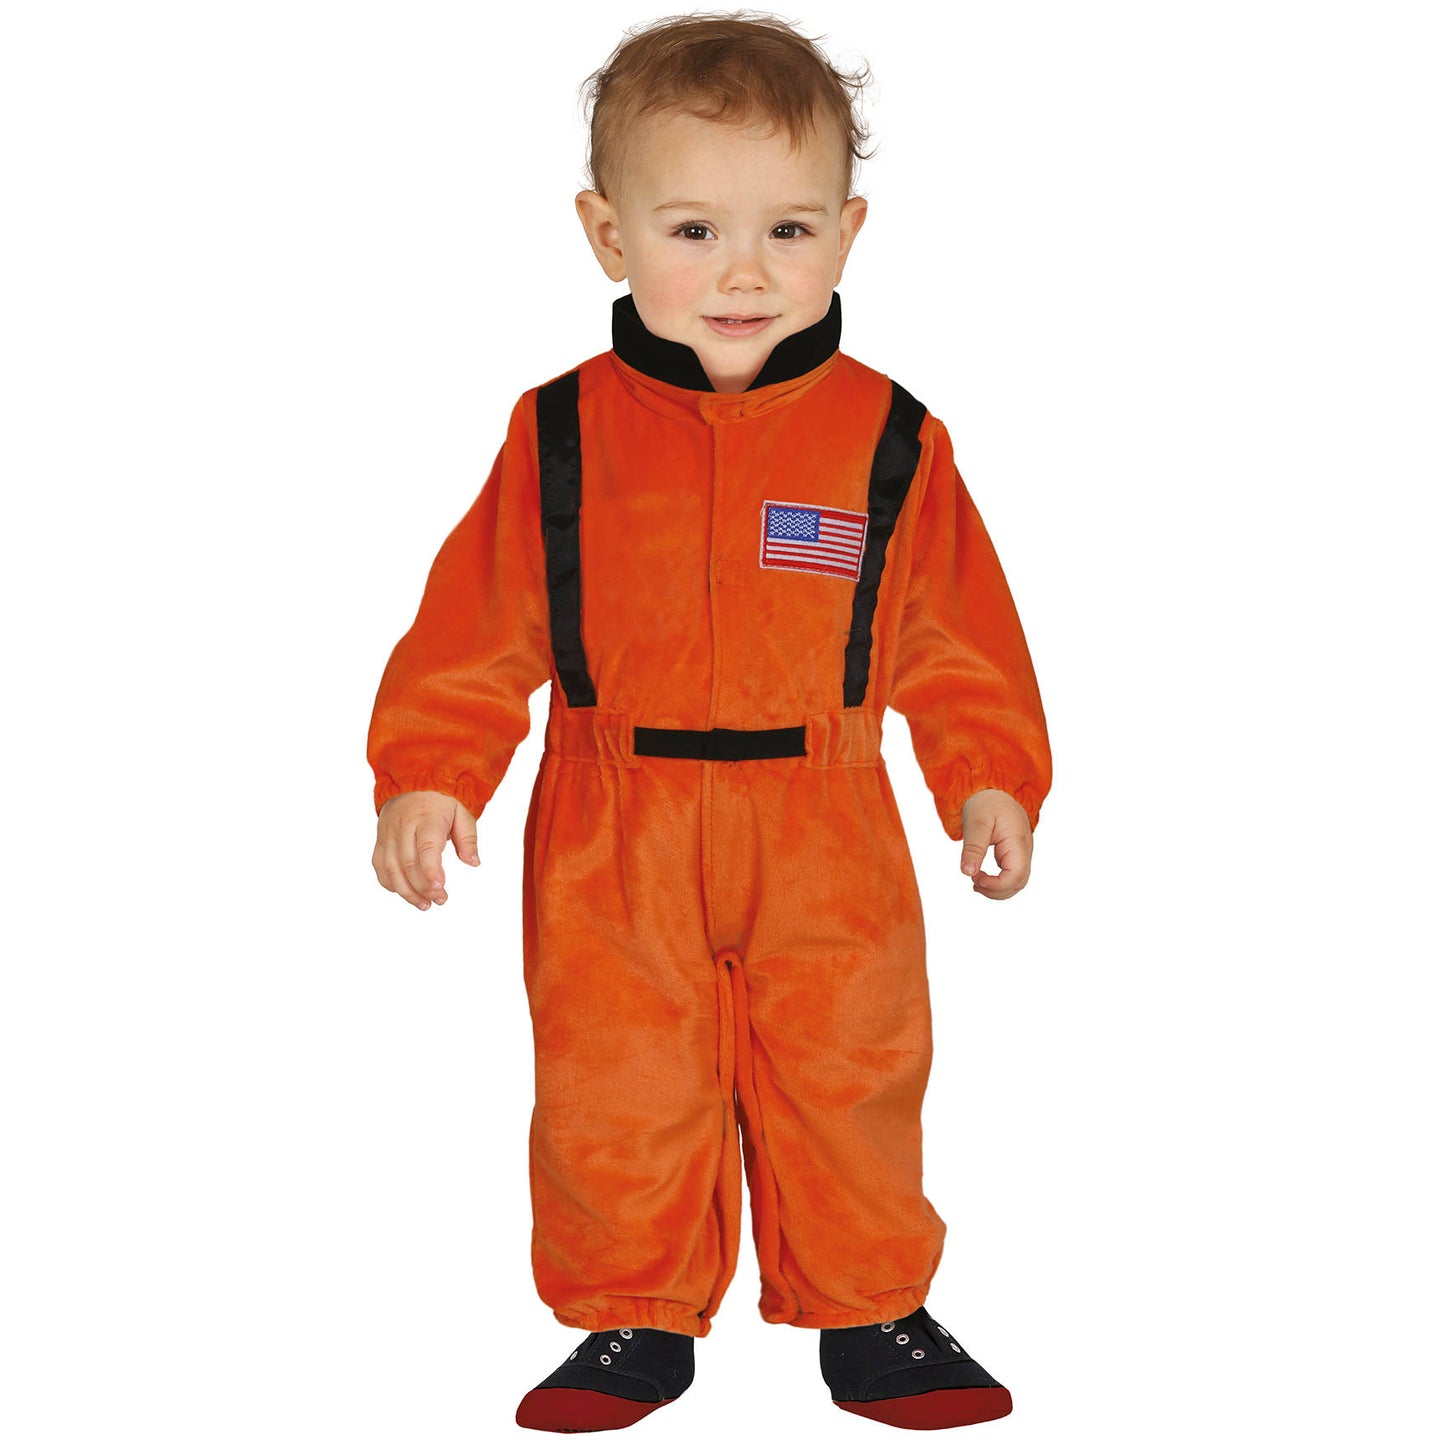 Costumi di gruppo da Astronauti Arancioni